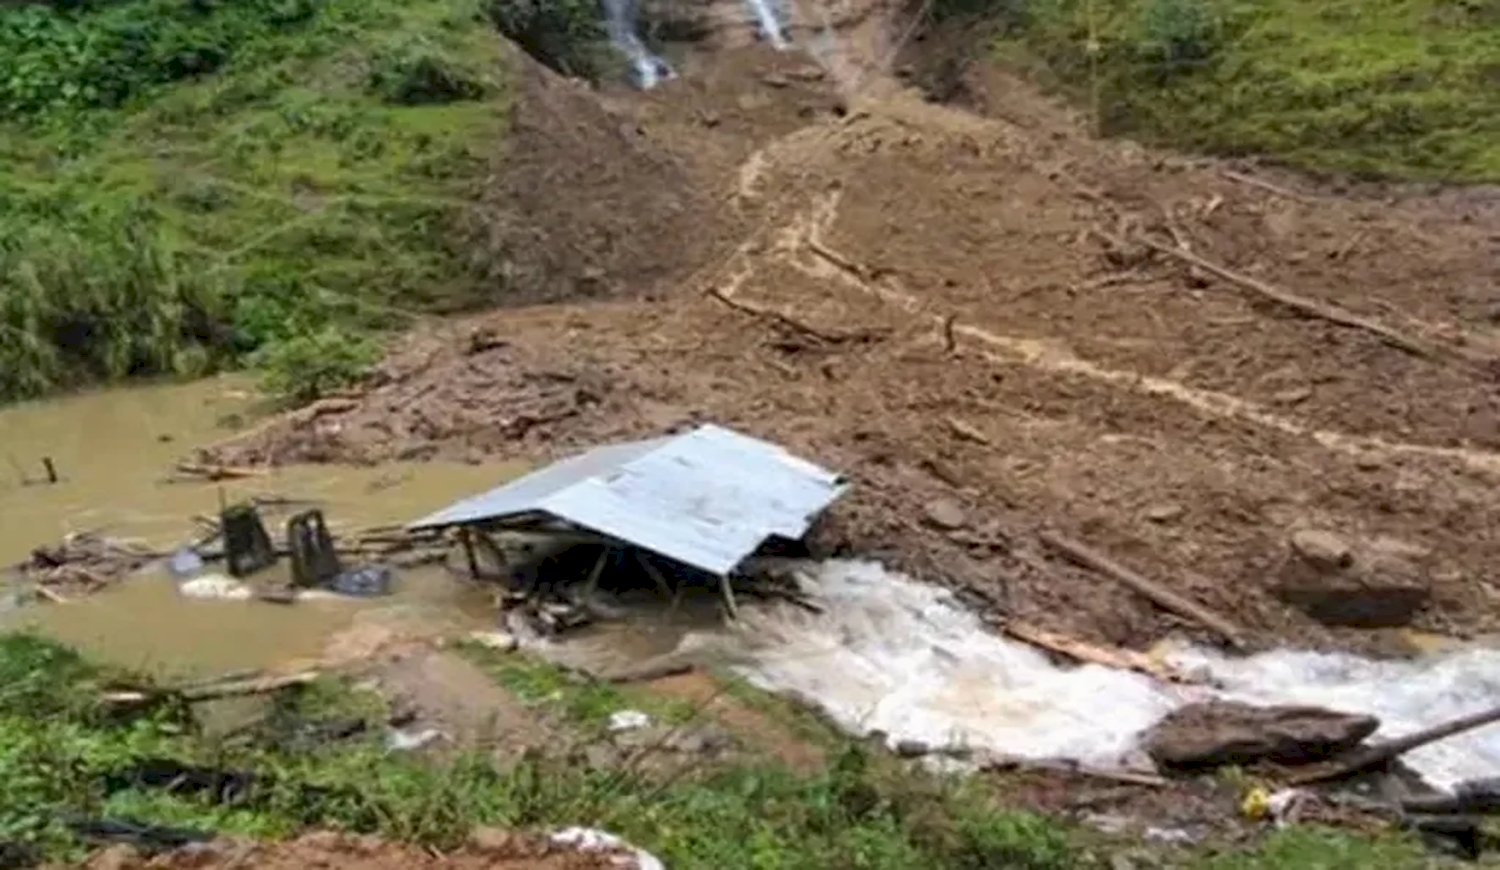 Κολομβία: Τουλάχιστον 12 νεκροί από χείμαρρο λάσπης που έπληξε μεταλλείο